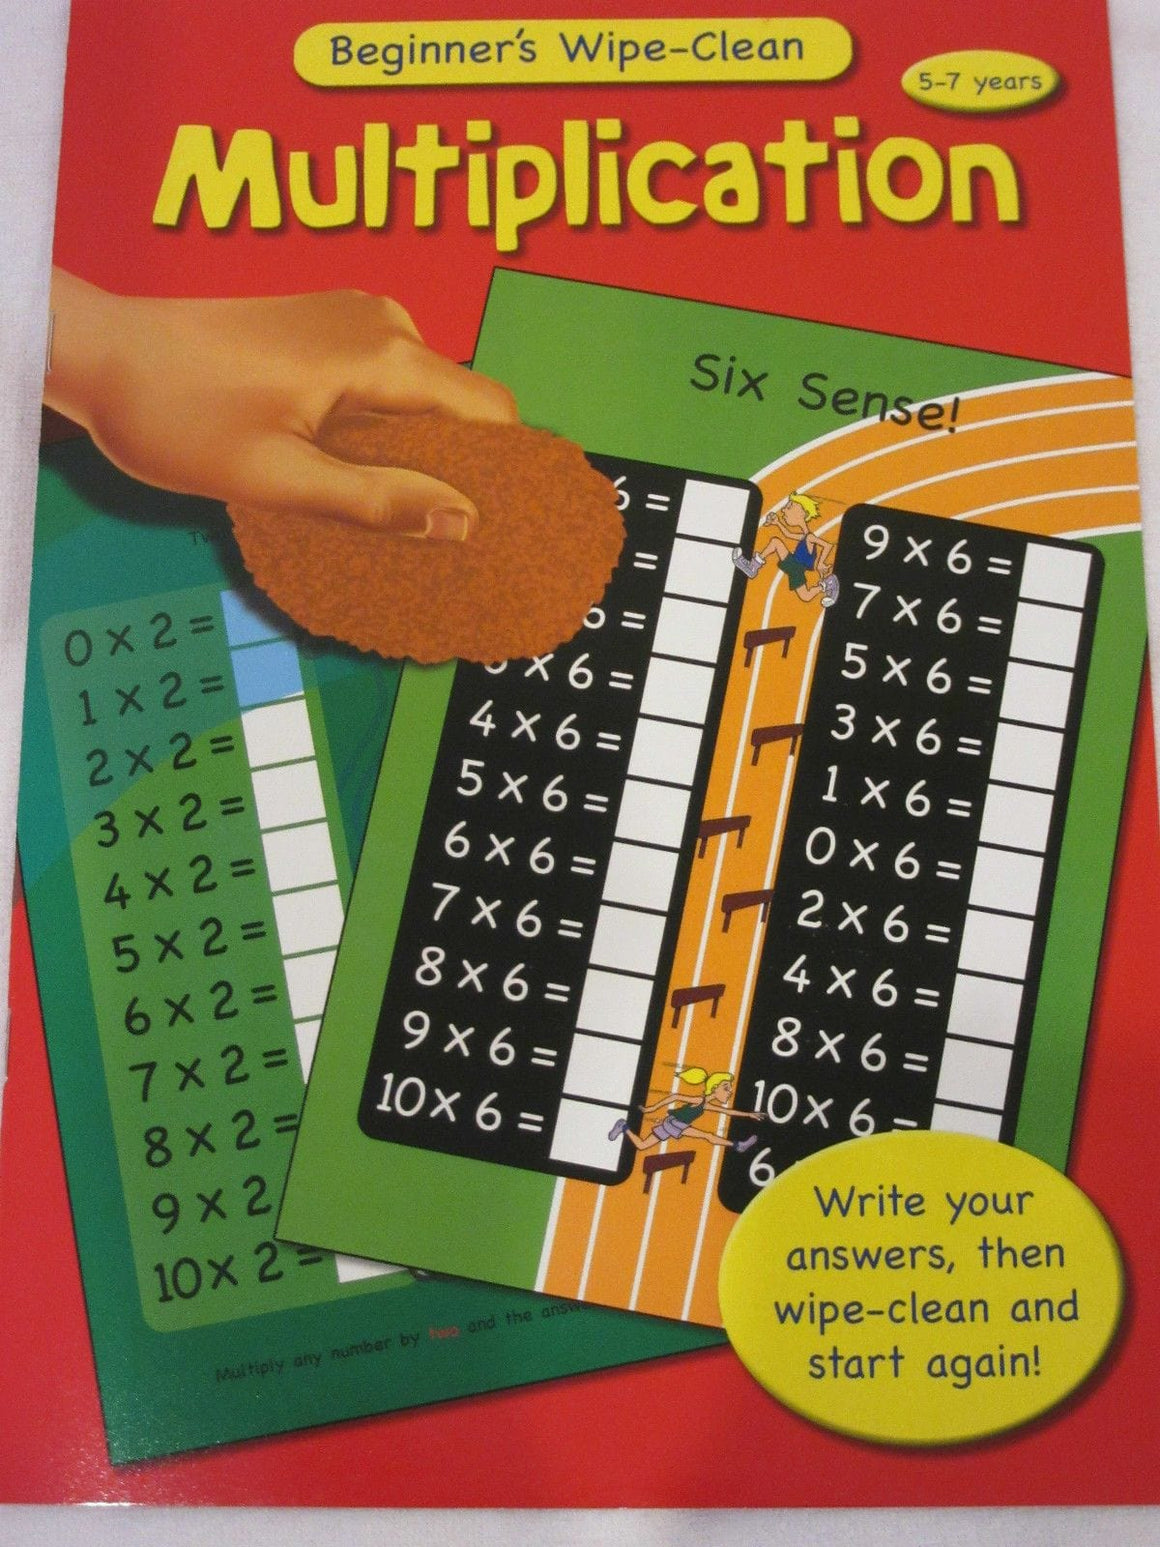 Wipe Clean Educational Book - Multiplication 5-7 years.